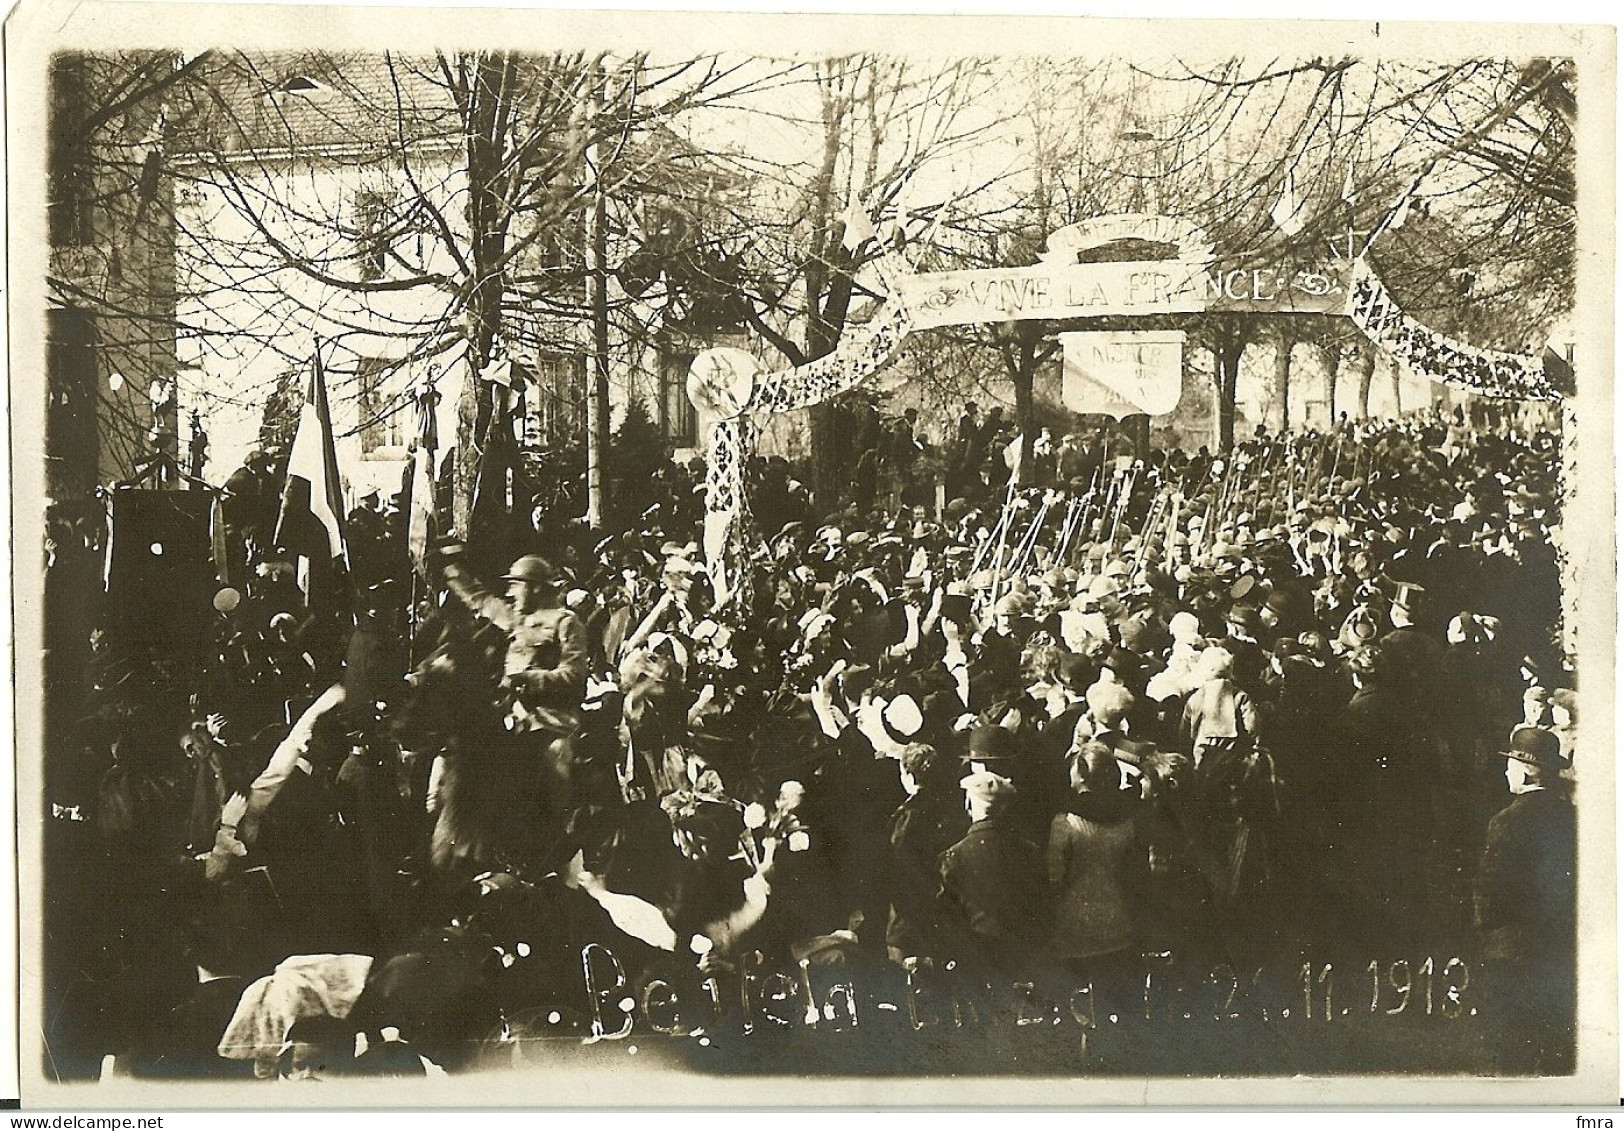 67 – BENFELD – Fête De La Victoire 21.11.1918 - Grande Photo Ancienne 17,5 X 12 Cm    /GP17 - Benfeld